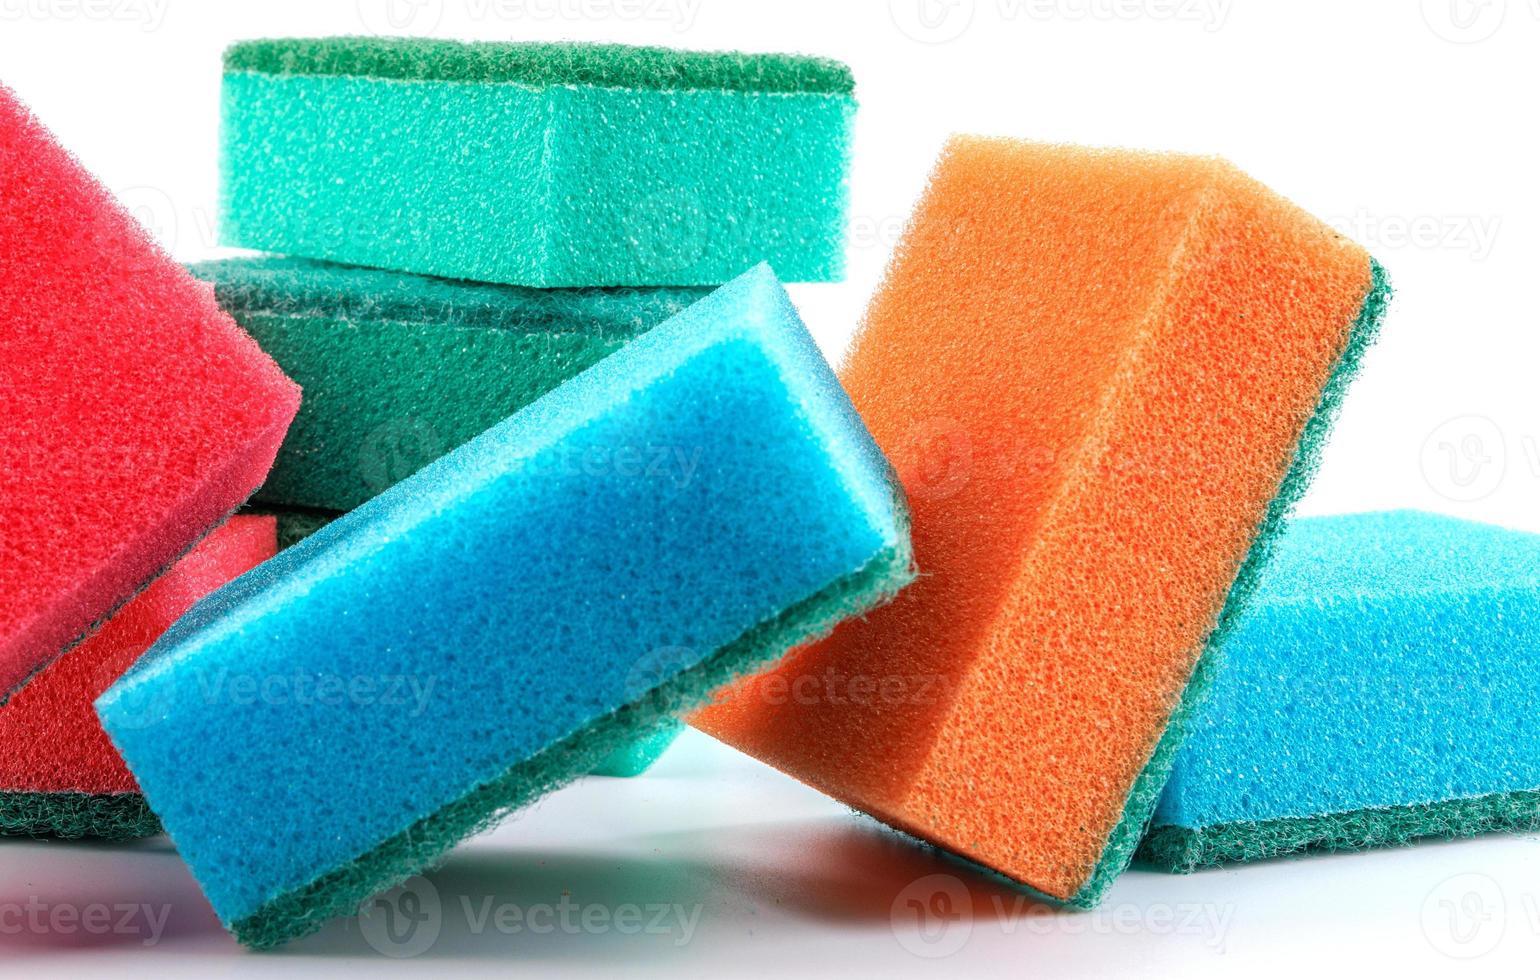 https://static.vecteezy.com/ti/fotos-gratis/p1/16789174-varias-esponjas-multicoloridas-em-um-fundo-branco-esponja-para-lavar-pratos-foto.jpg